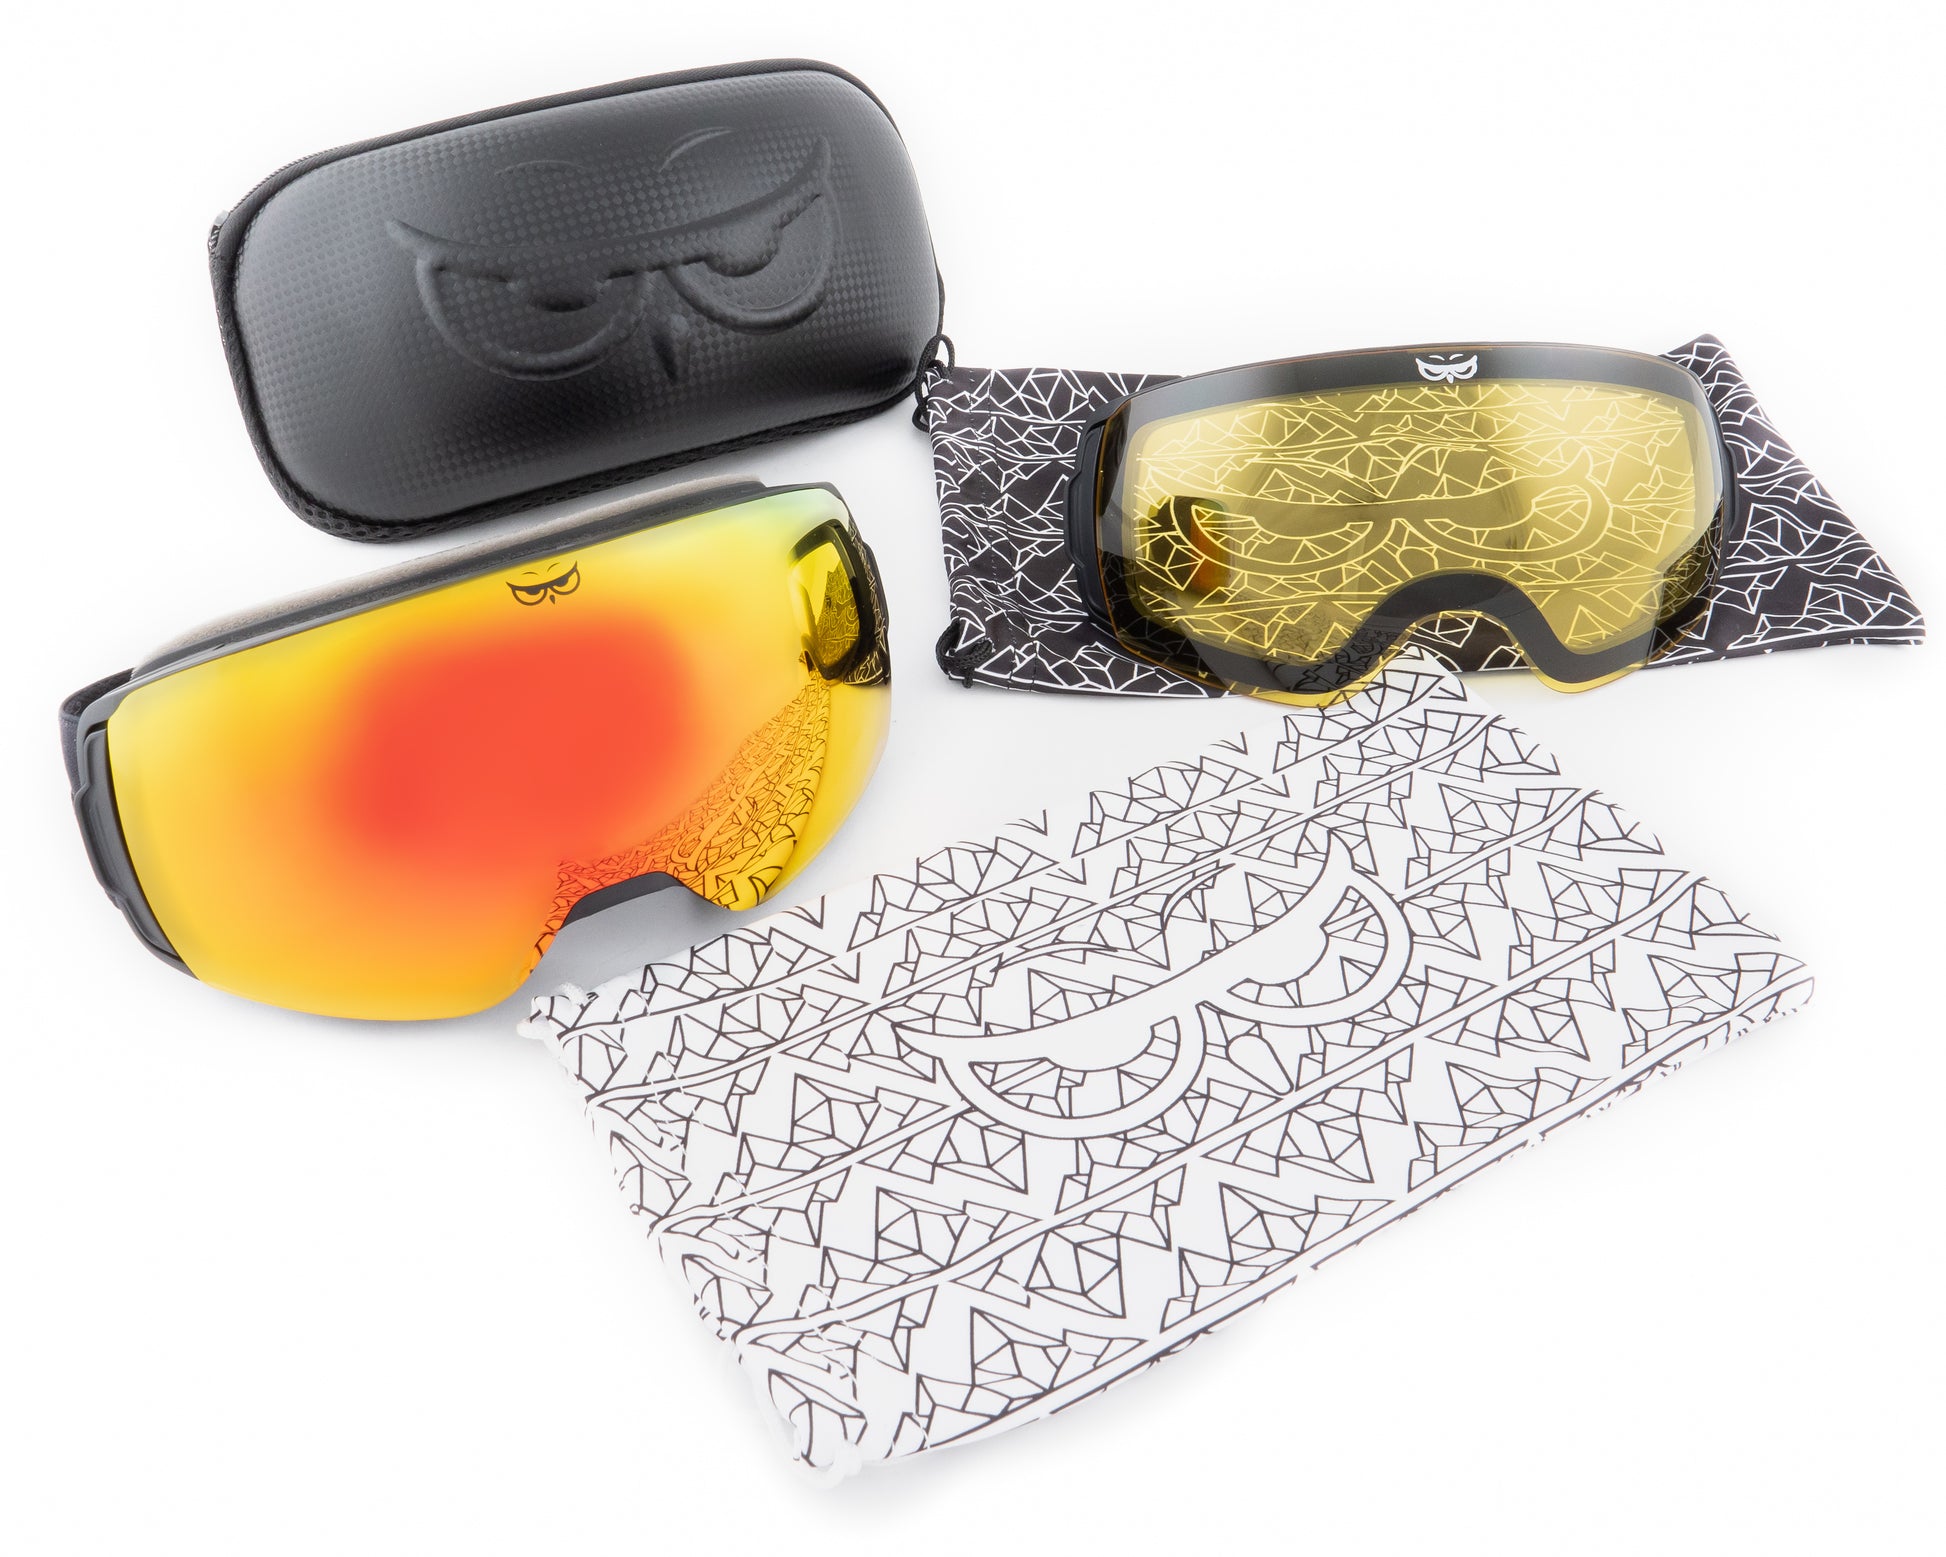 Gnarly Owl polarizační lyžařské snowboardové skialpové splitboardové brýle česká značka červený zrcadlový REVO zorník součást balení čistící pytlík obal náhradní žlutý rozjasňovací zorník pevné ultralehké pouzdro